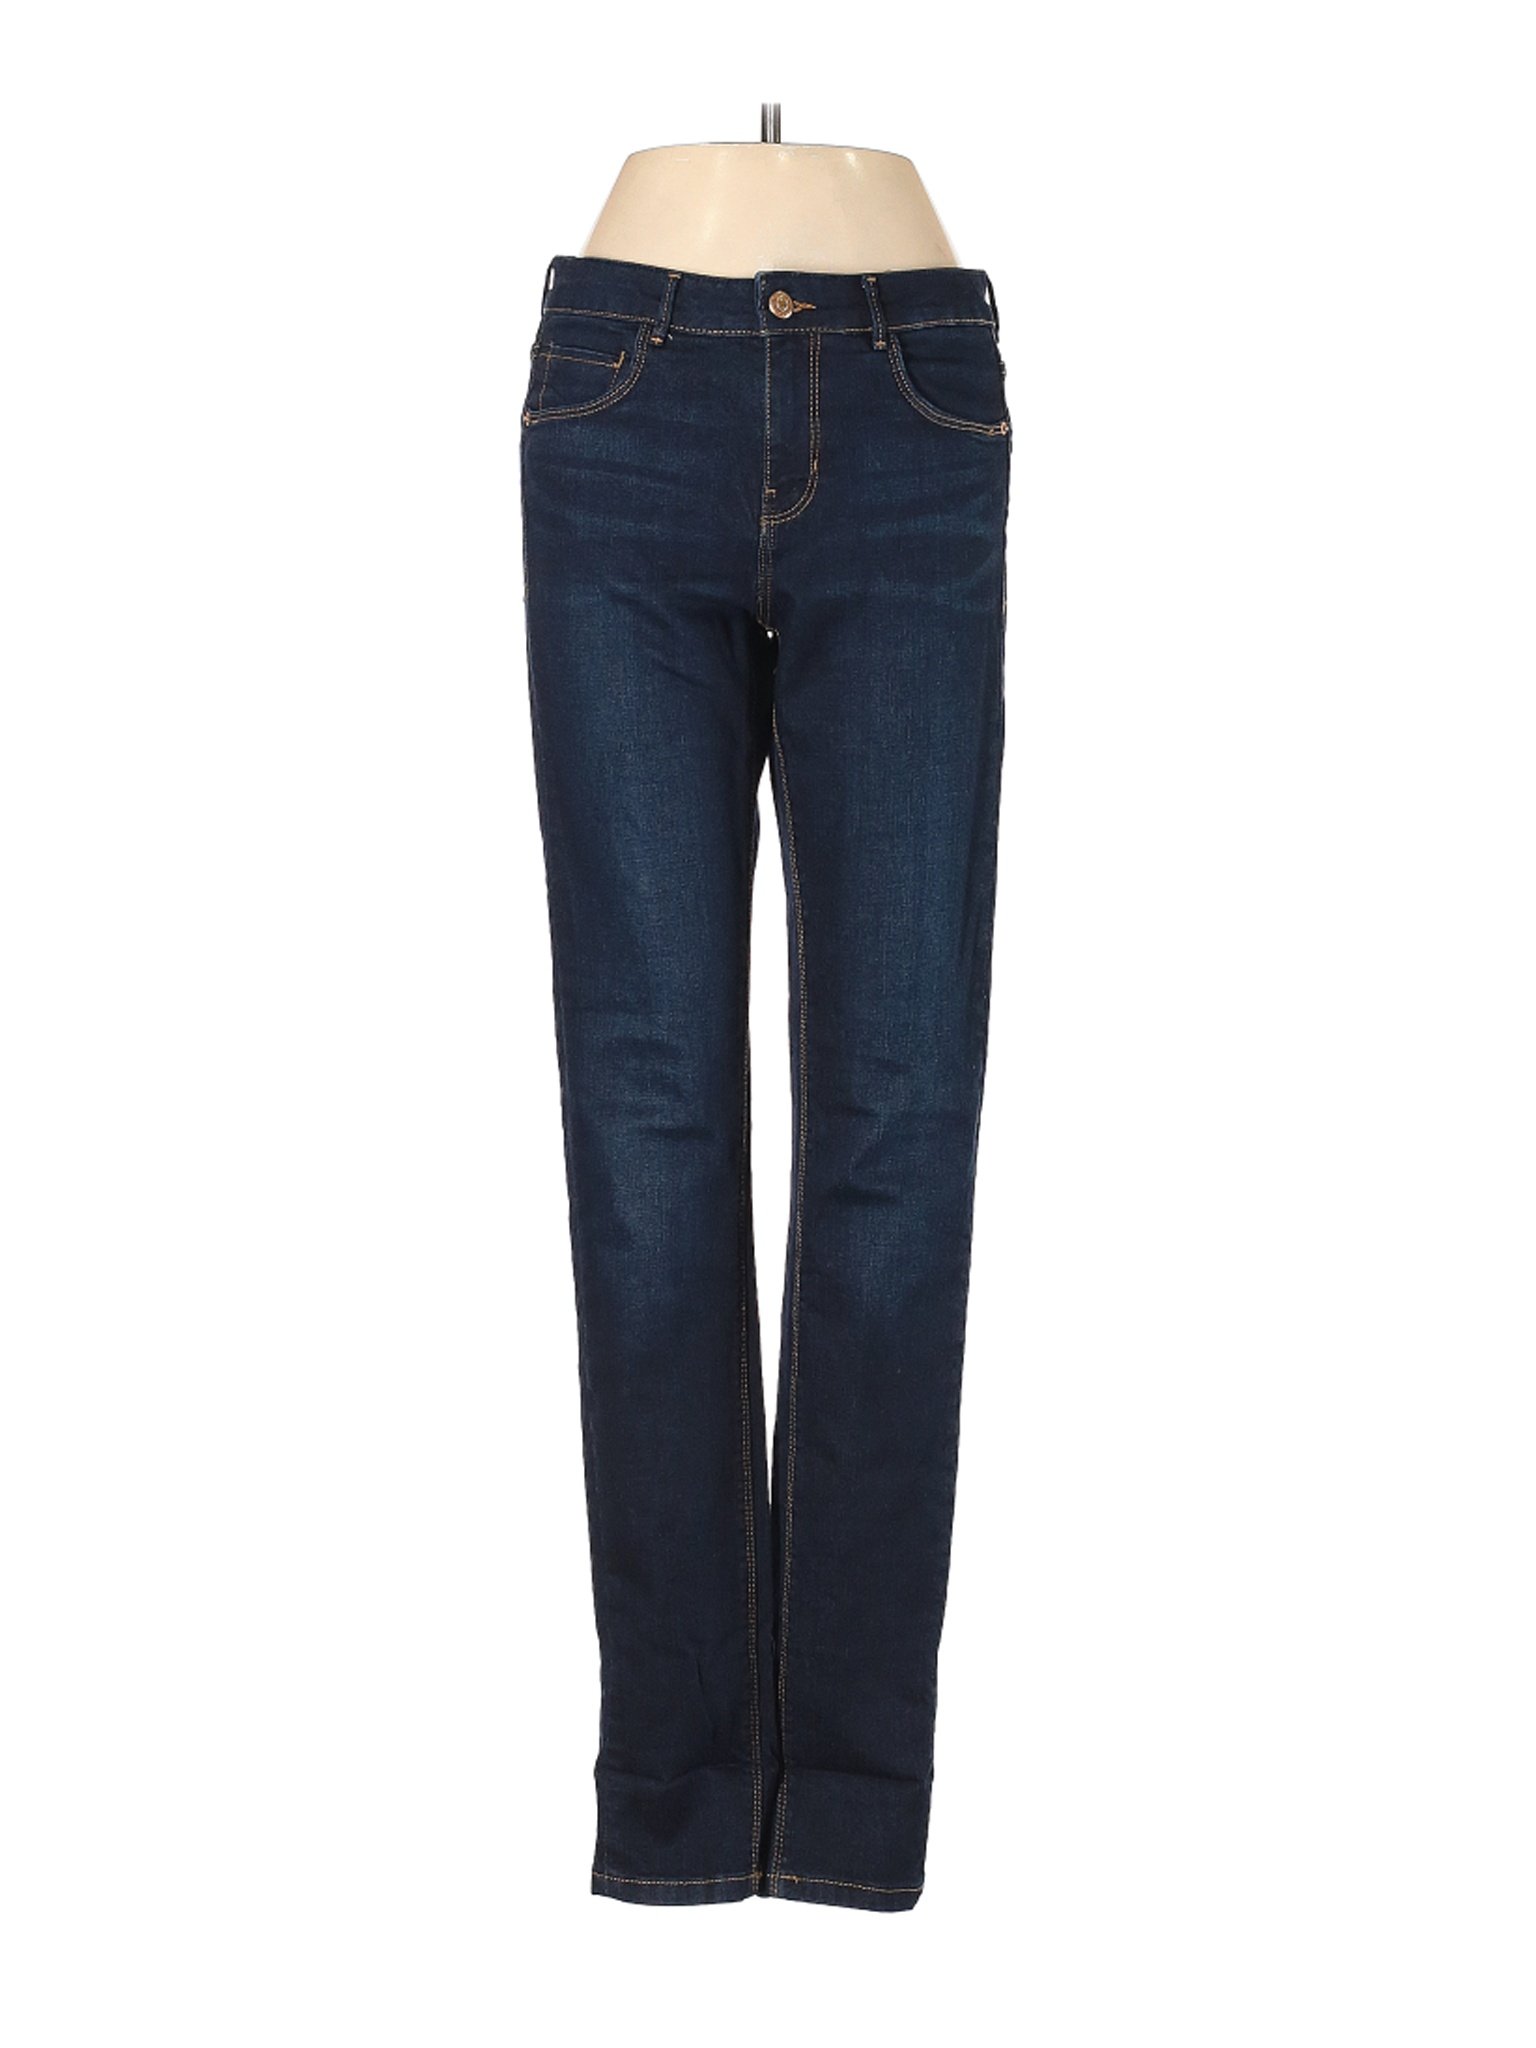 Zara TRF Women Blue Jeans 4 | eBay